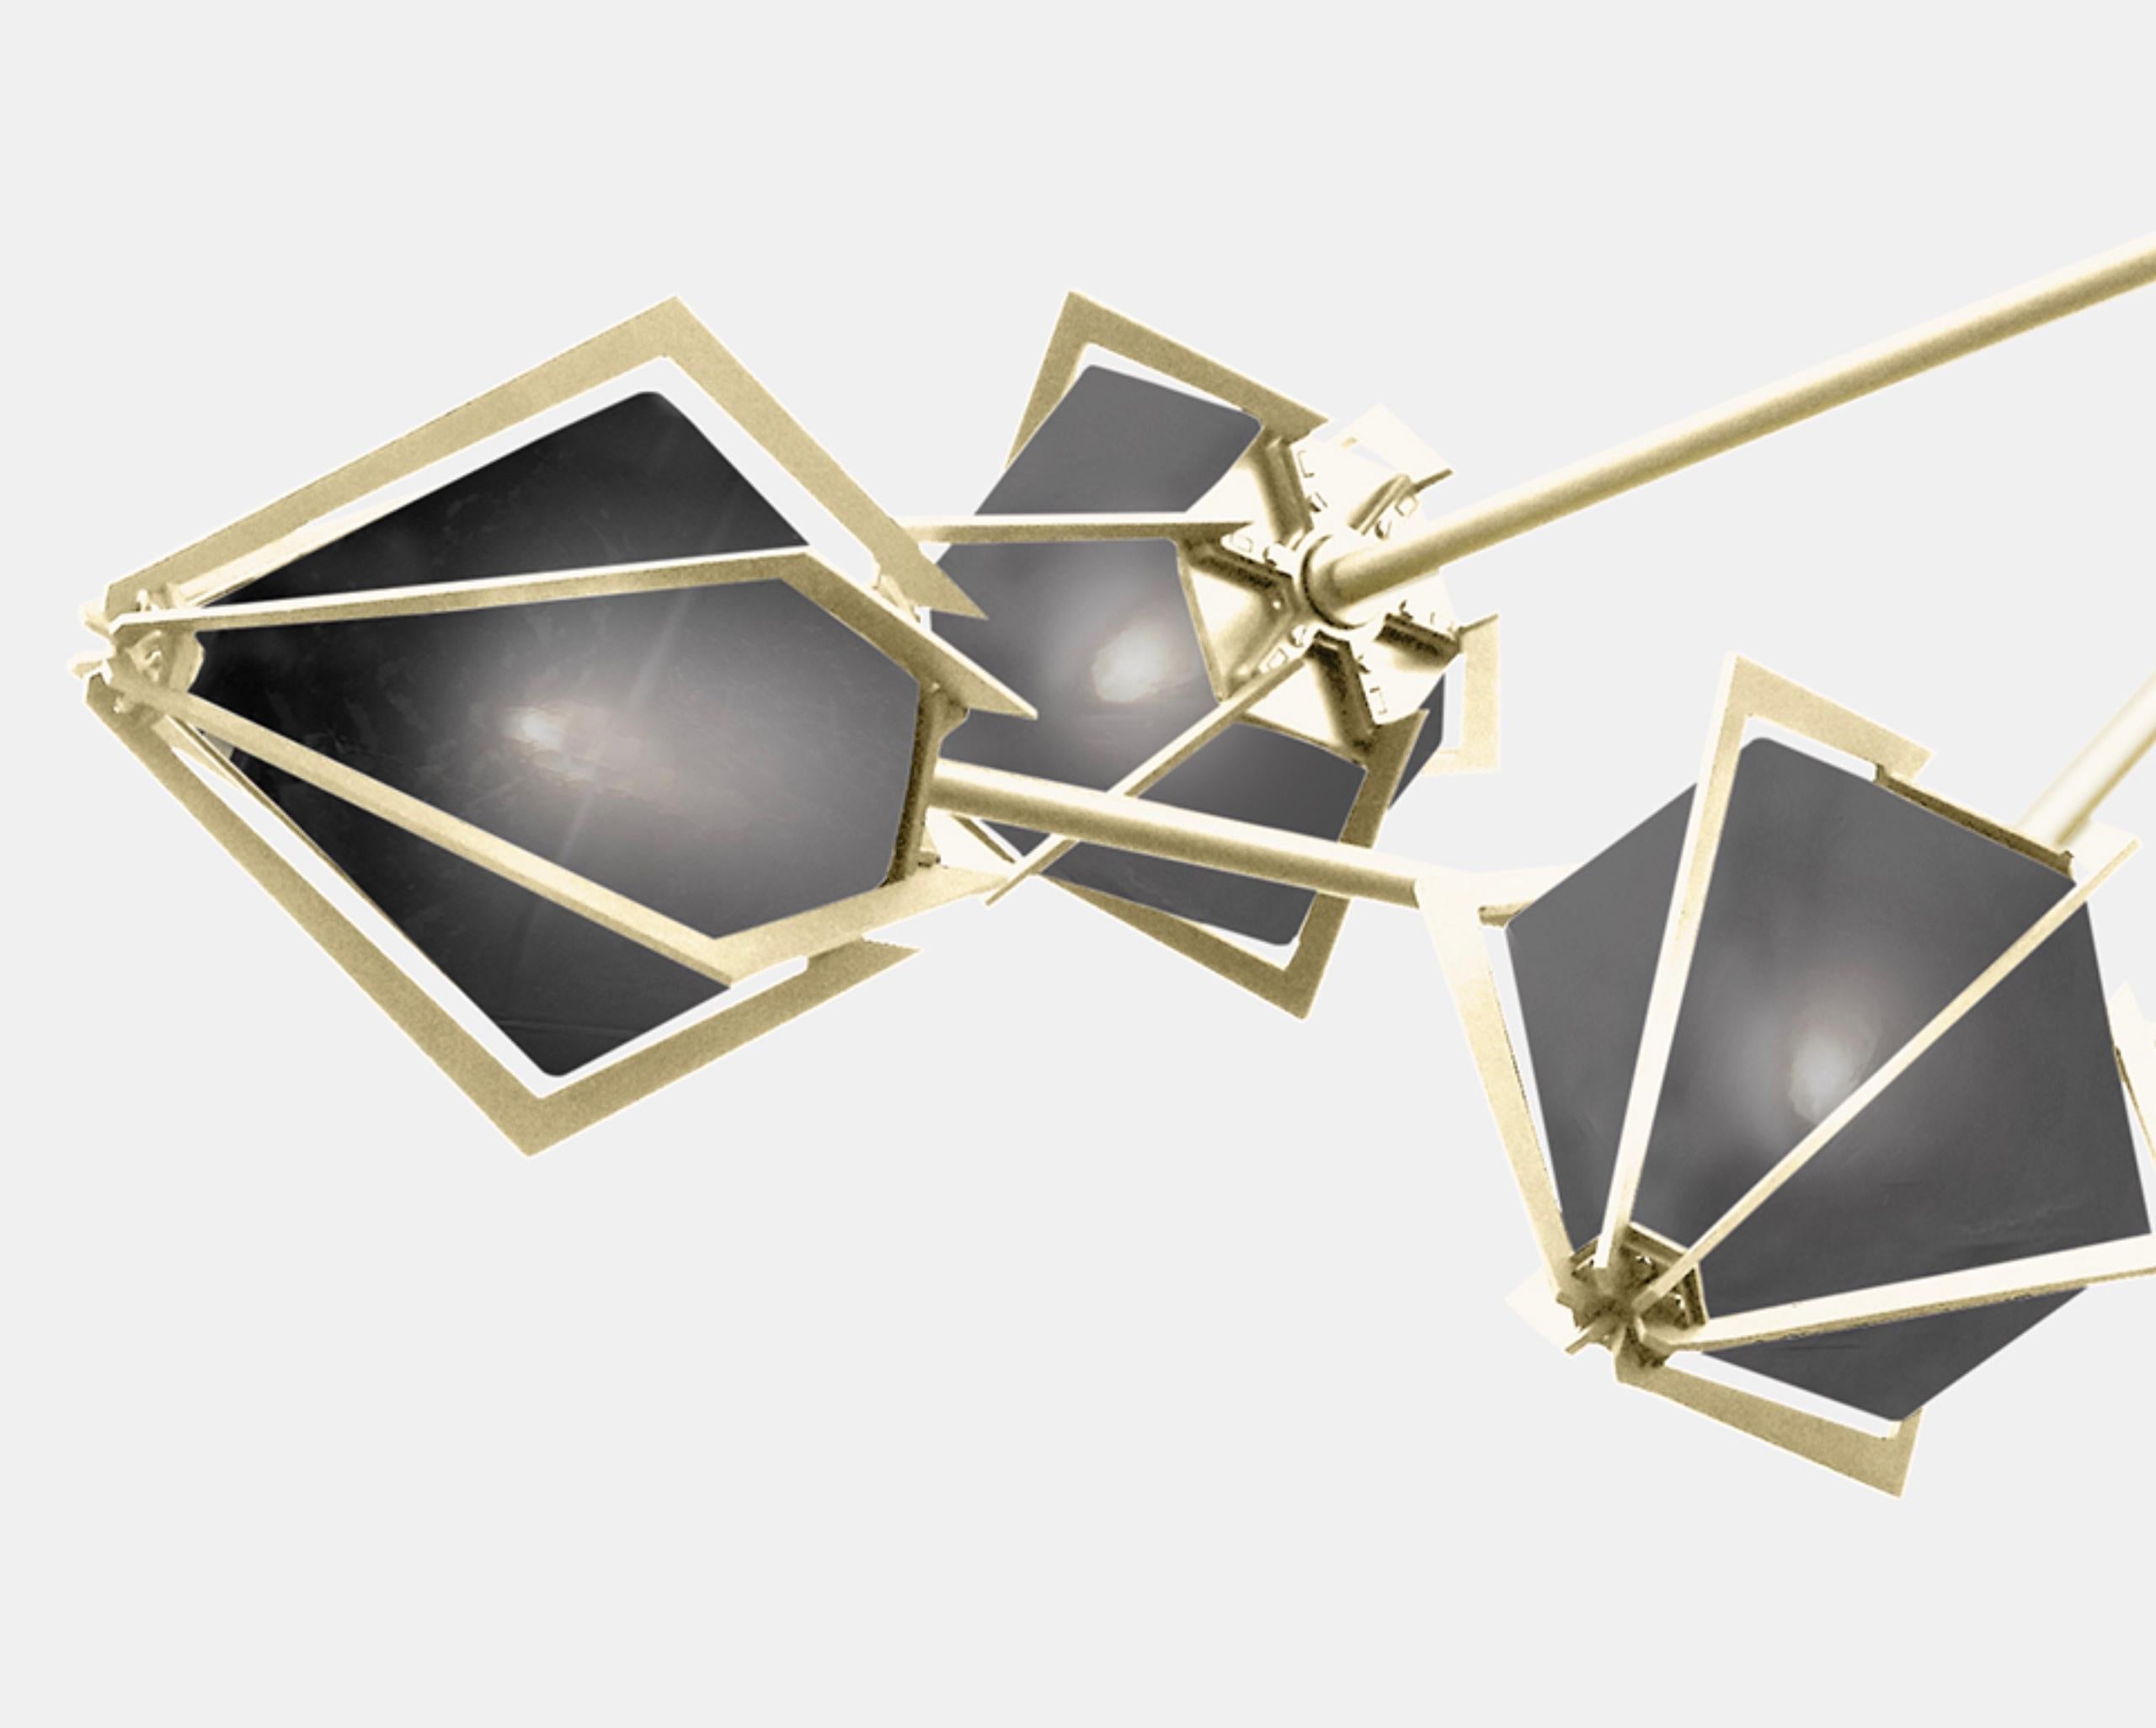 Der Harlow Spoke Chandelier Small bietet einen eleganten Sternenhimmel, der durch seinen Schirm aus mundgeblasenem Glas reflektiert und gebrochen wird. Der Harlow Spoke Chandelier Small ist ein funkelndes Prisma, das direkt von der Welt des Schmucks